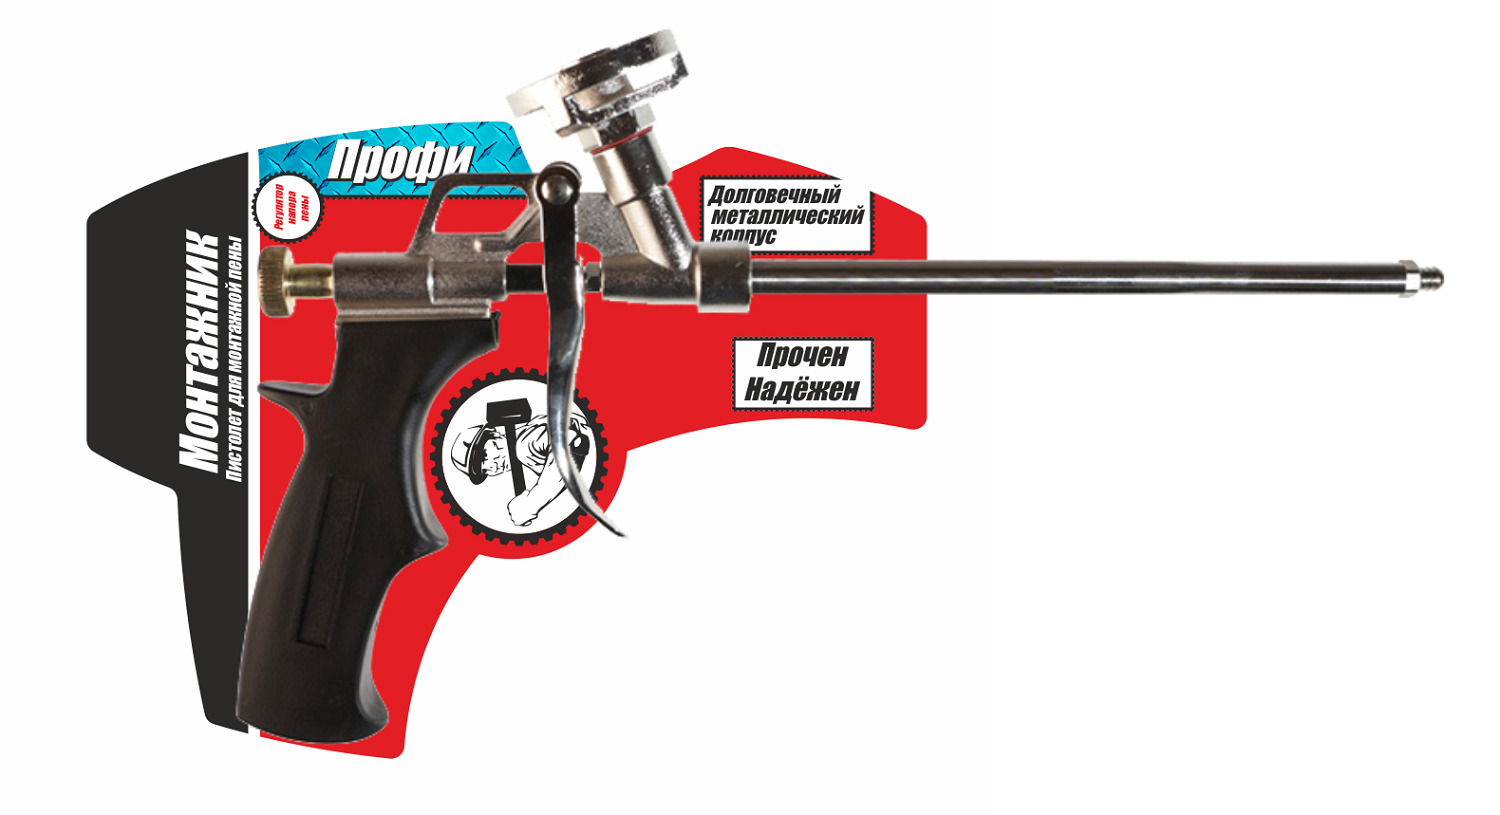 Промывка для пистолета: виды, особенности, бренды, инструкция по применению